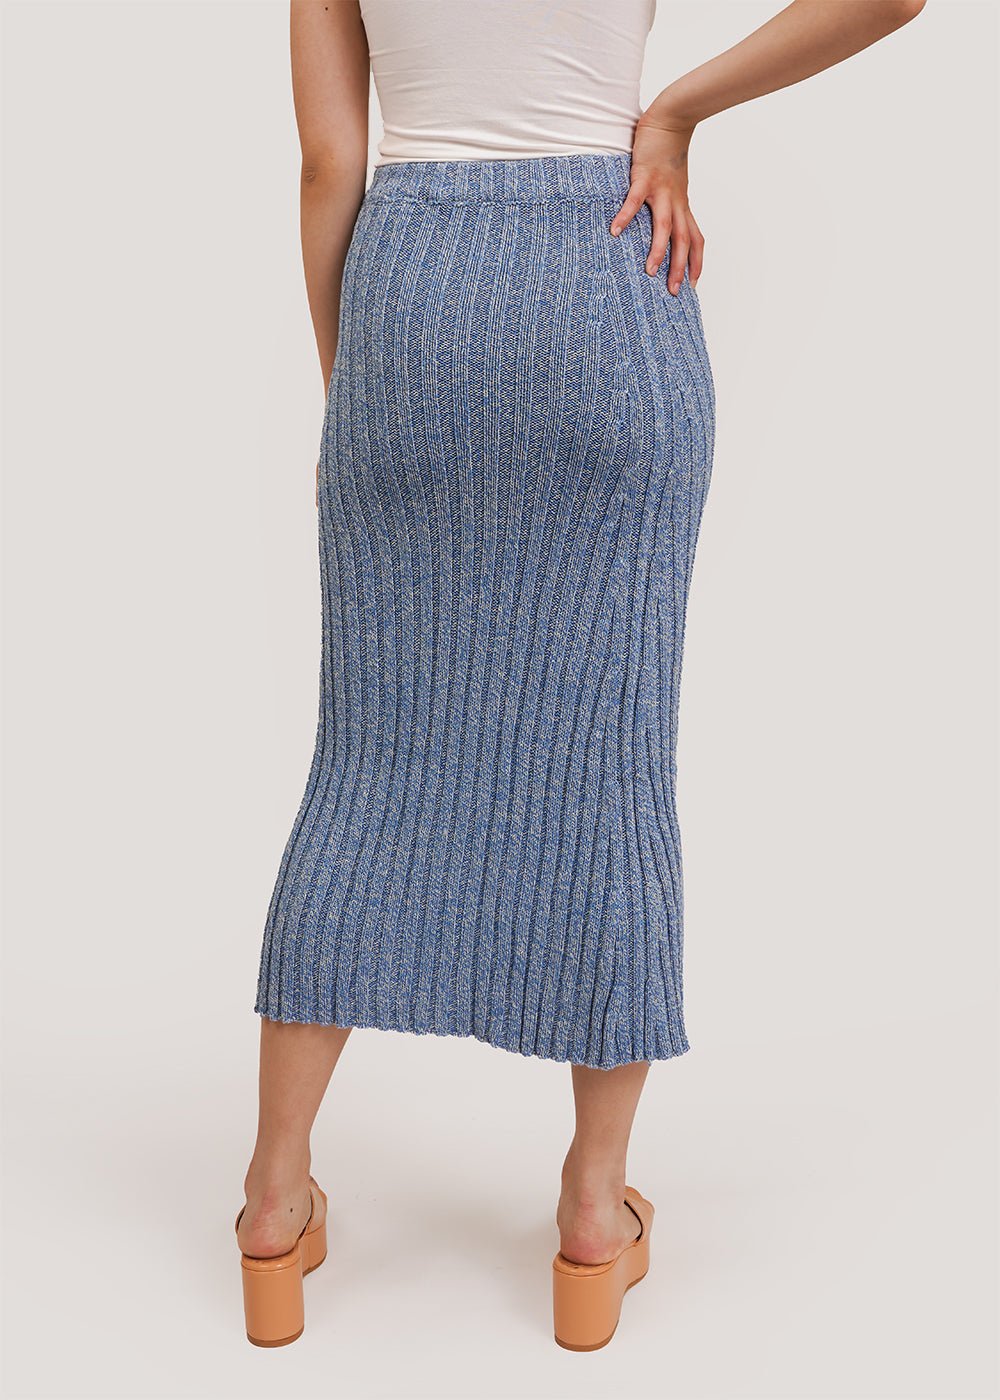 Loulou Skirt in Blue Melange by BASERANGE – New Classics Studios